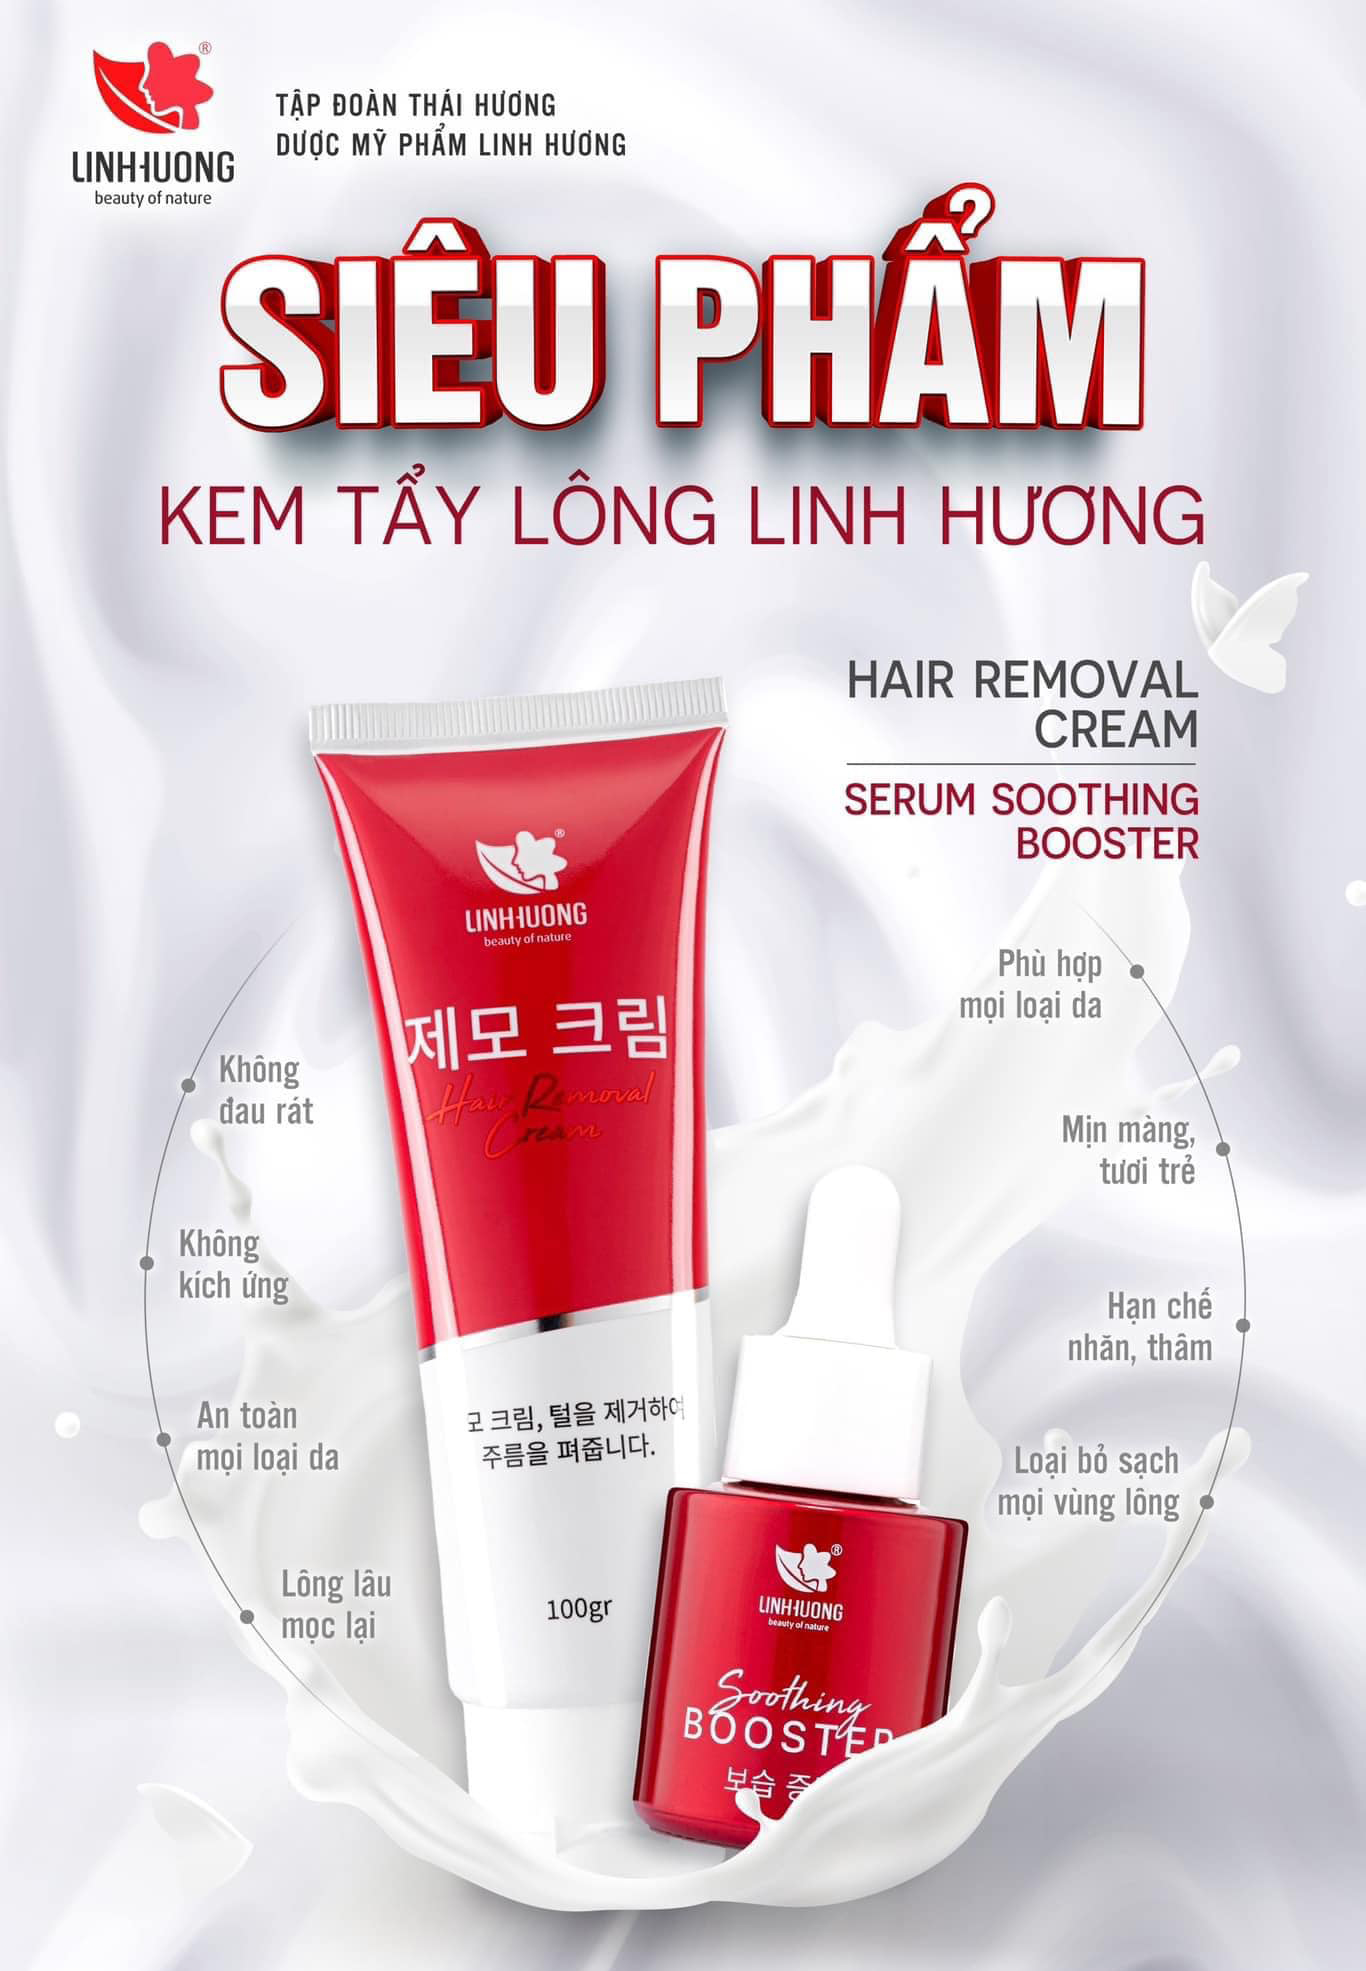 Kem tẩy lông Hair Removal Cream Linh Hương